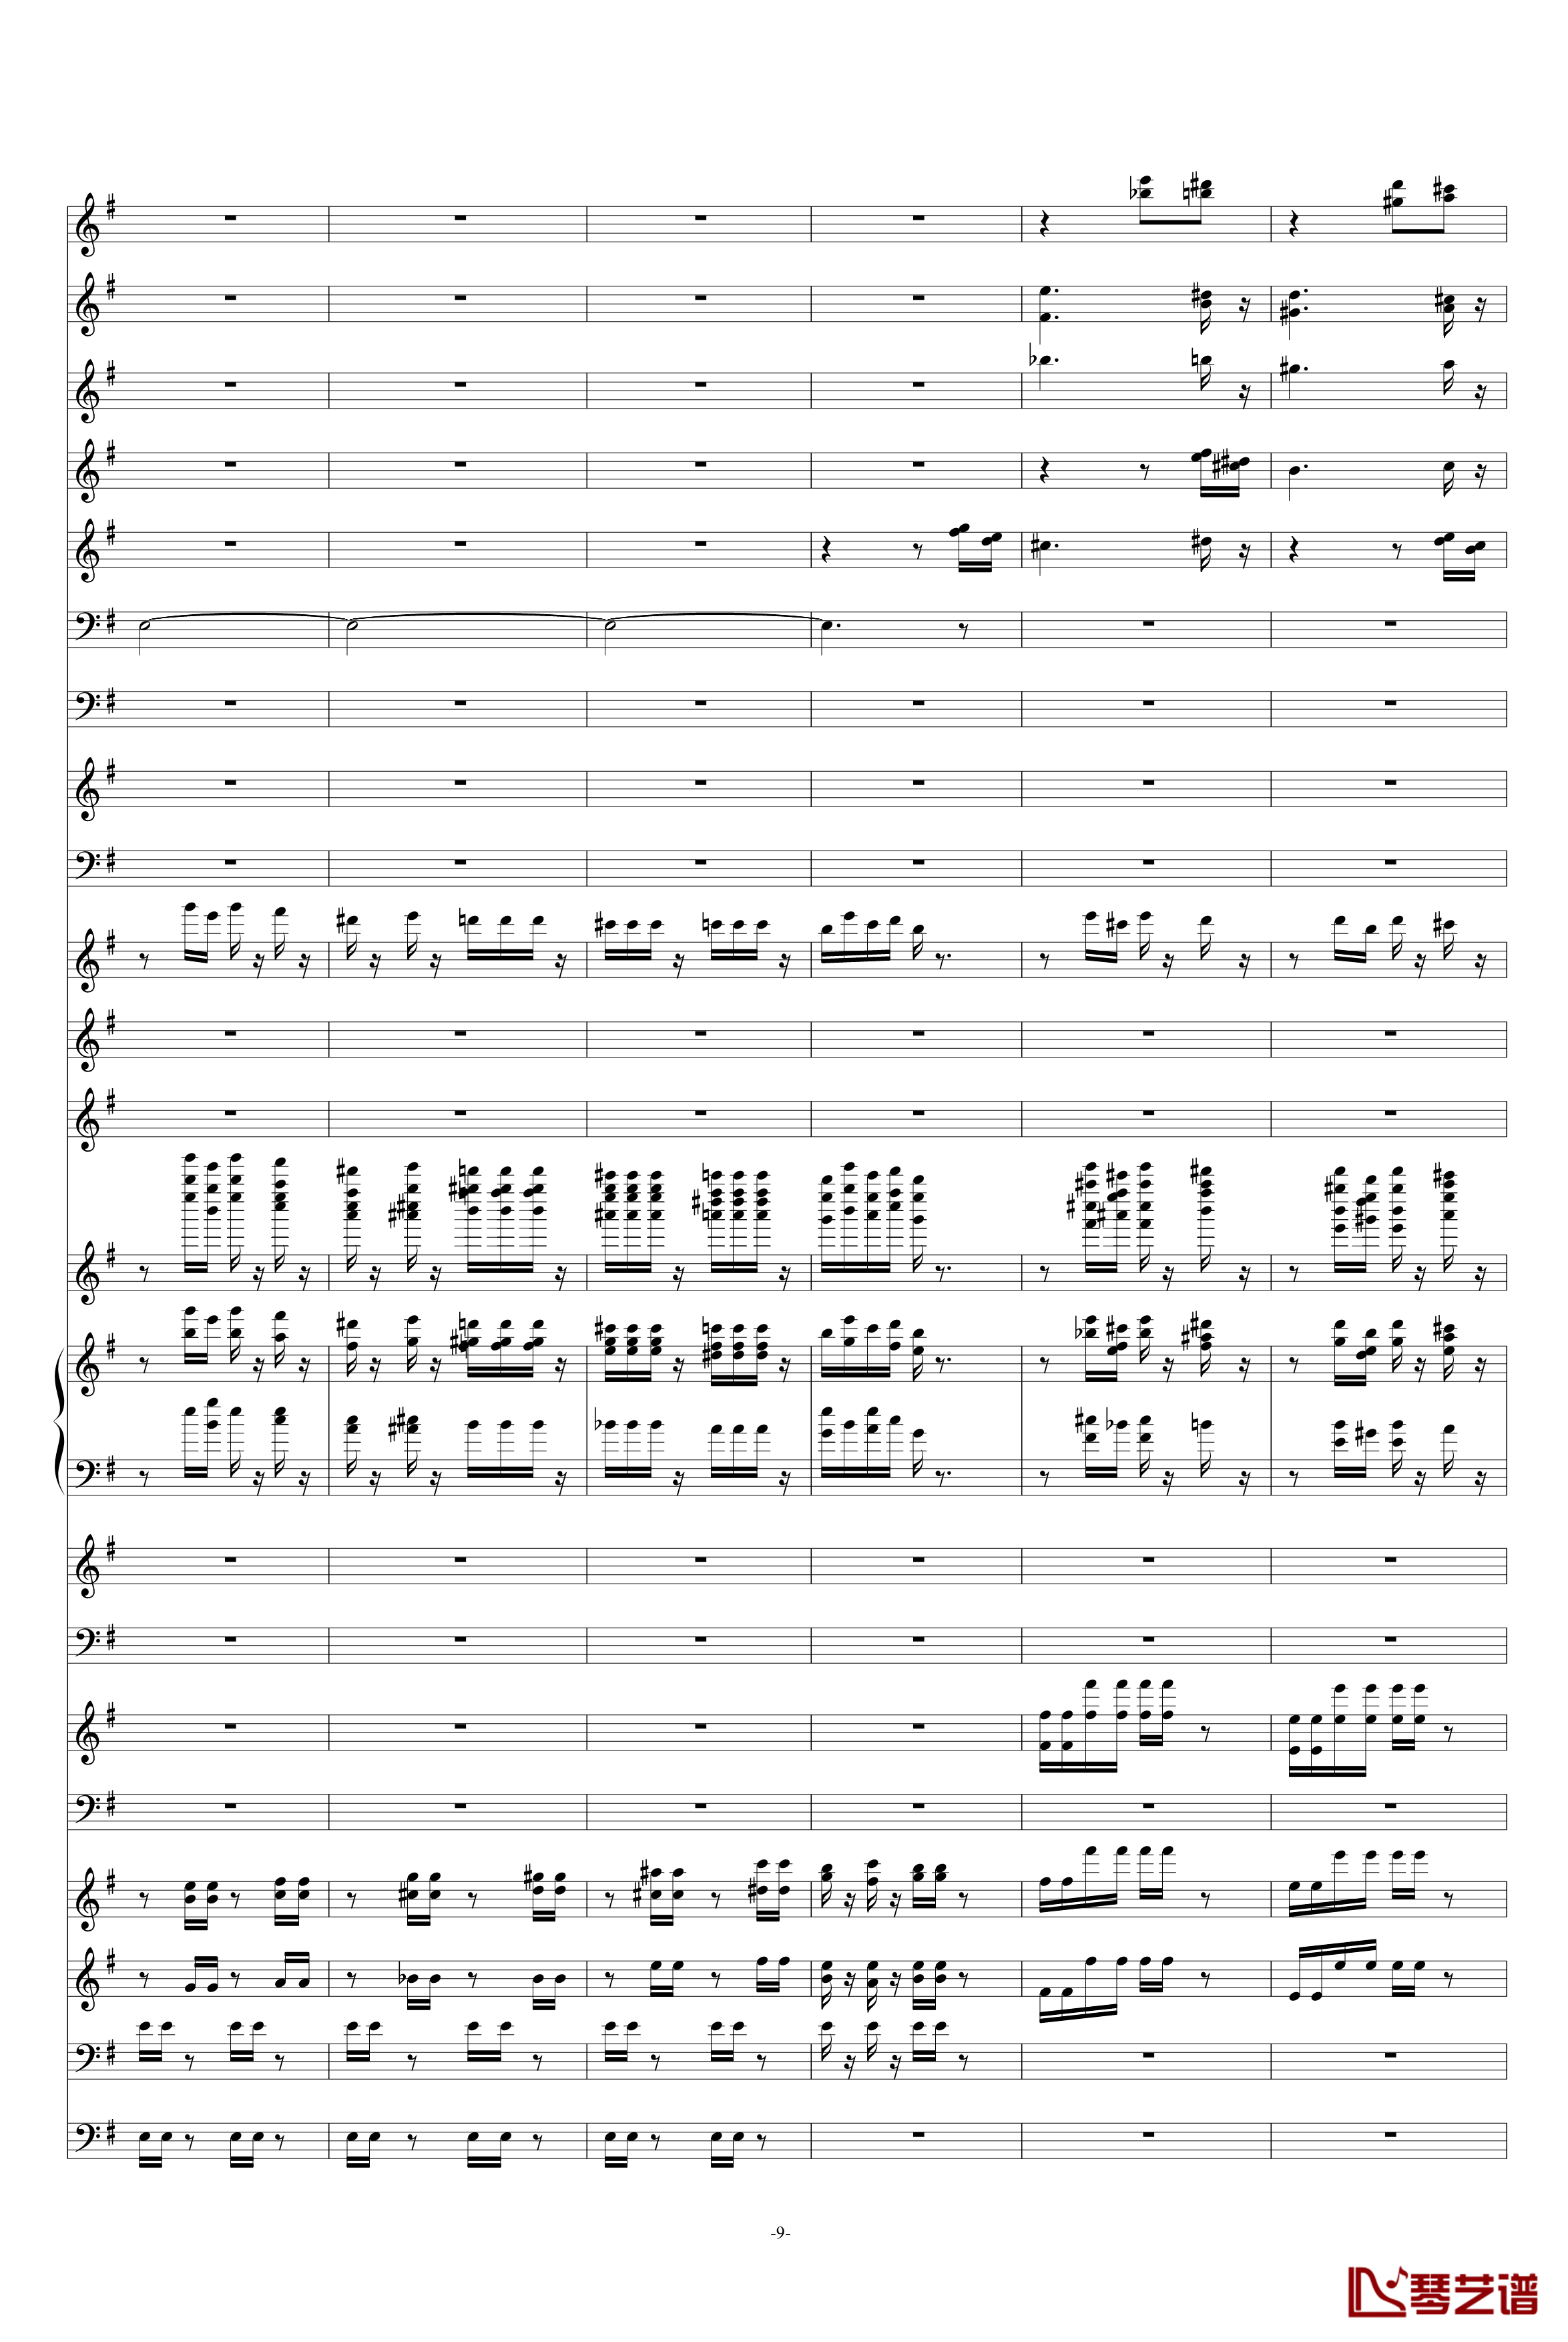 糖果仙子舞曲钢琴谱-柴科夫斯基-Peter Ilyich Tchaikovsky9